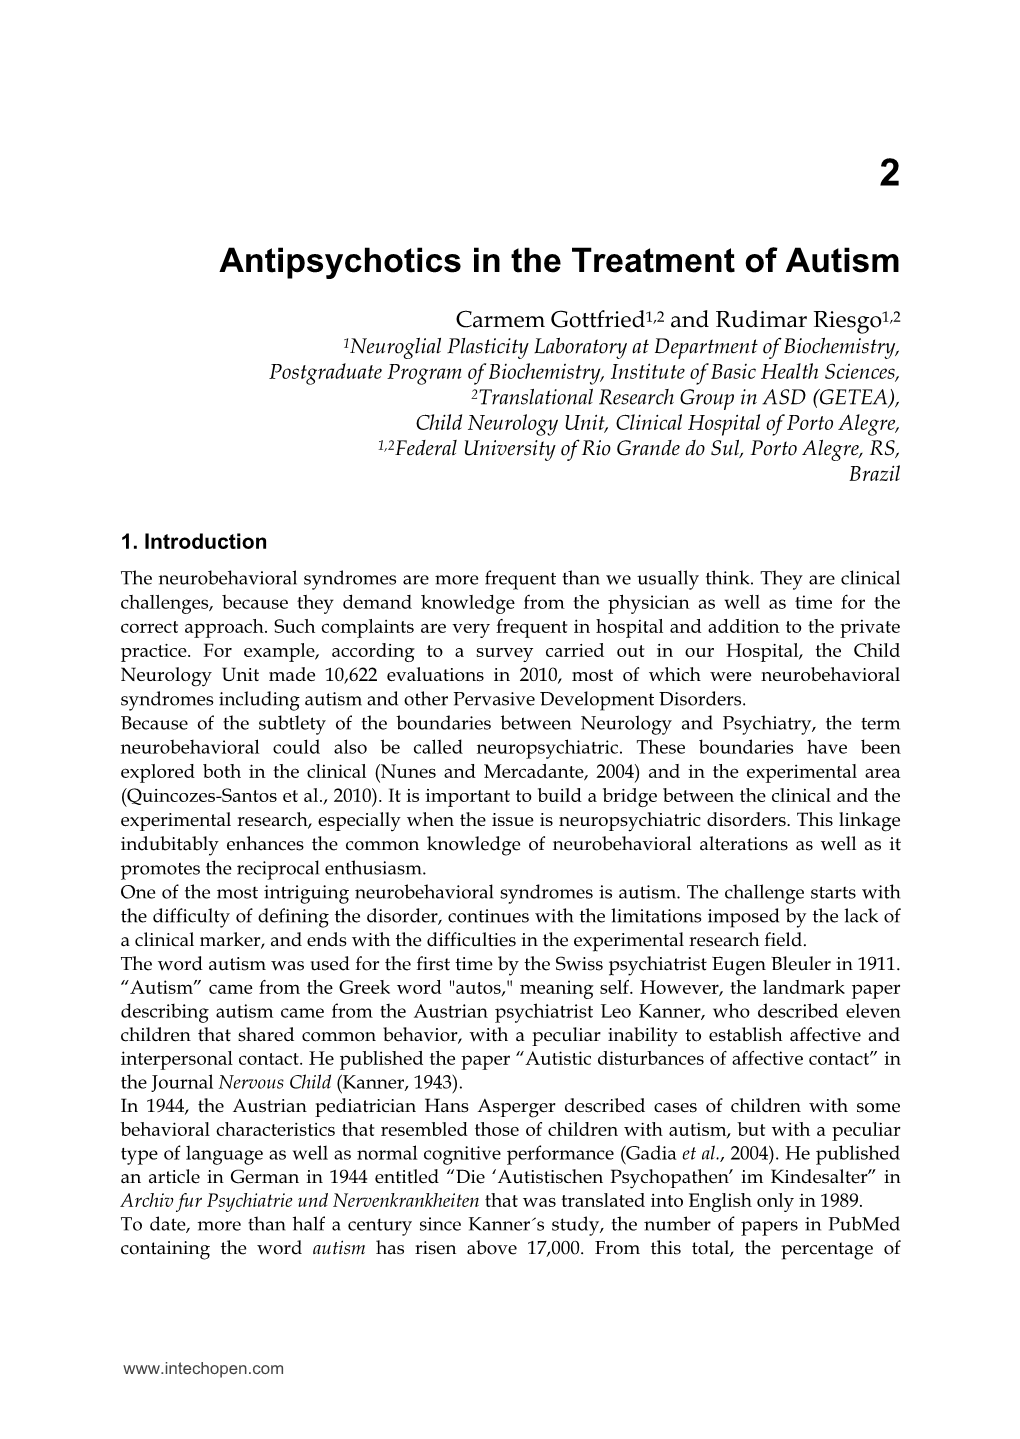 Antipsychotics in the Treatment of Autism